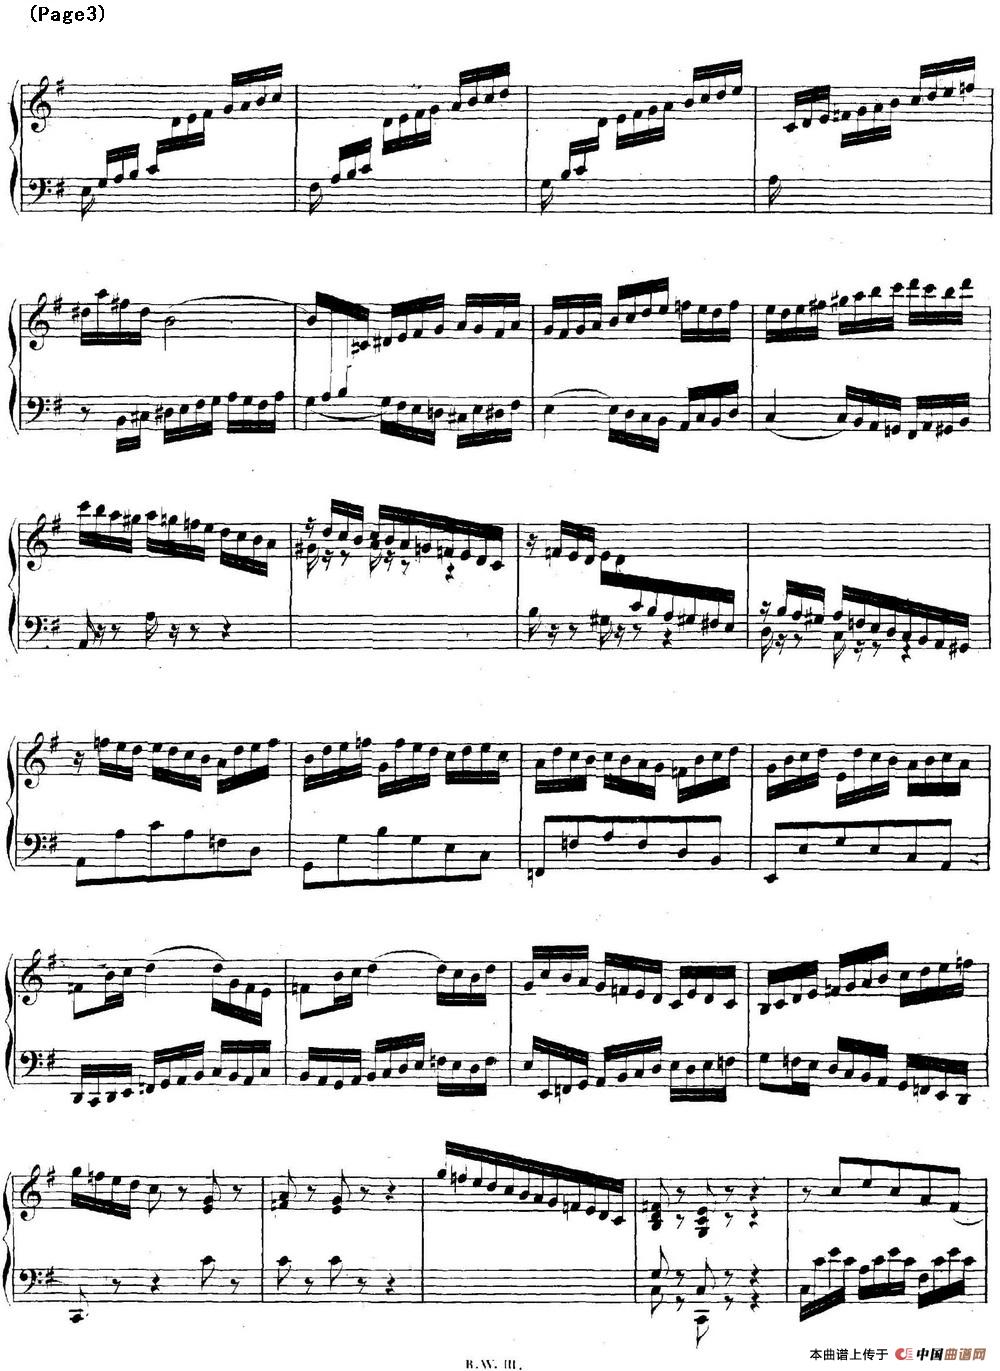 帕蒂塔6首德国组曲（No.5 G大调 巴赫 Partita G Major BWV 829）(1)_BWV0829_页面_03.jpg